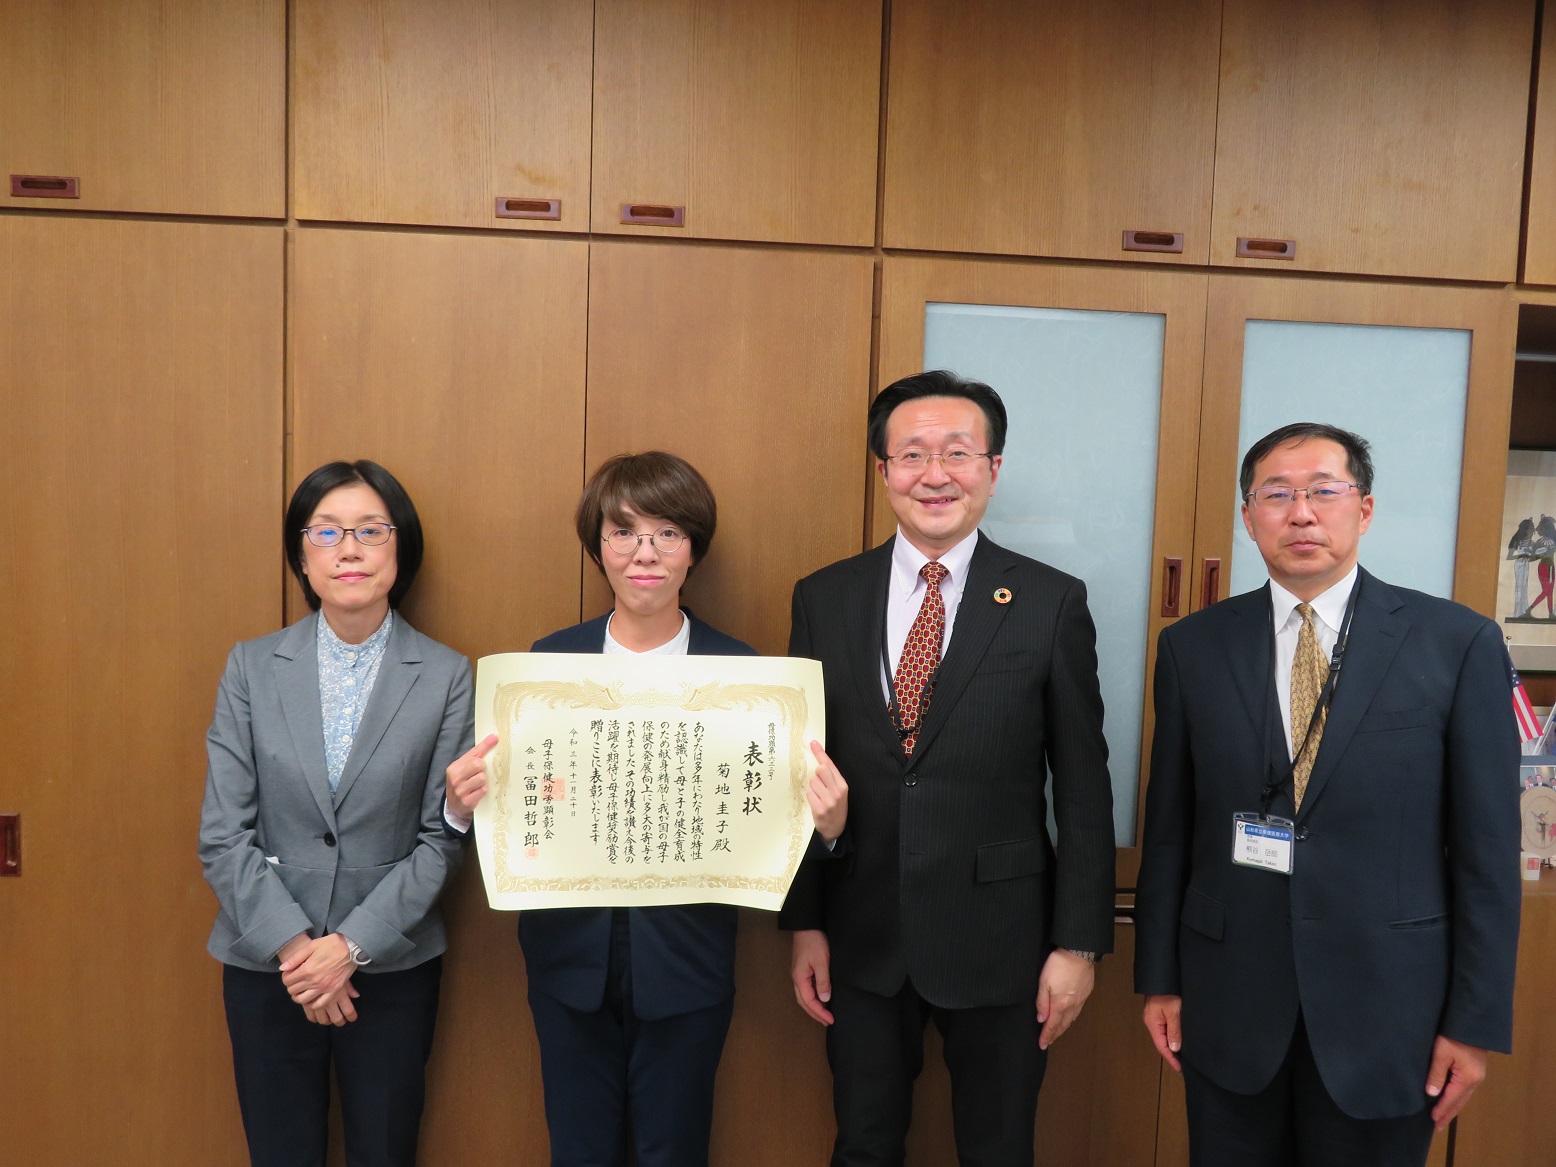 受賞の報告をした菊地准教授（中央左）と上月学長（中央右）